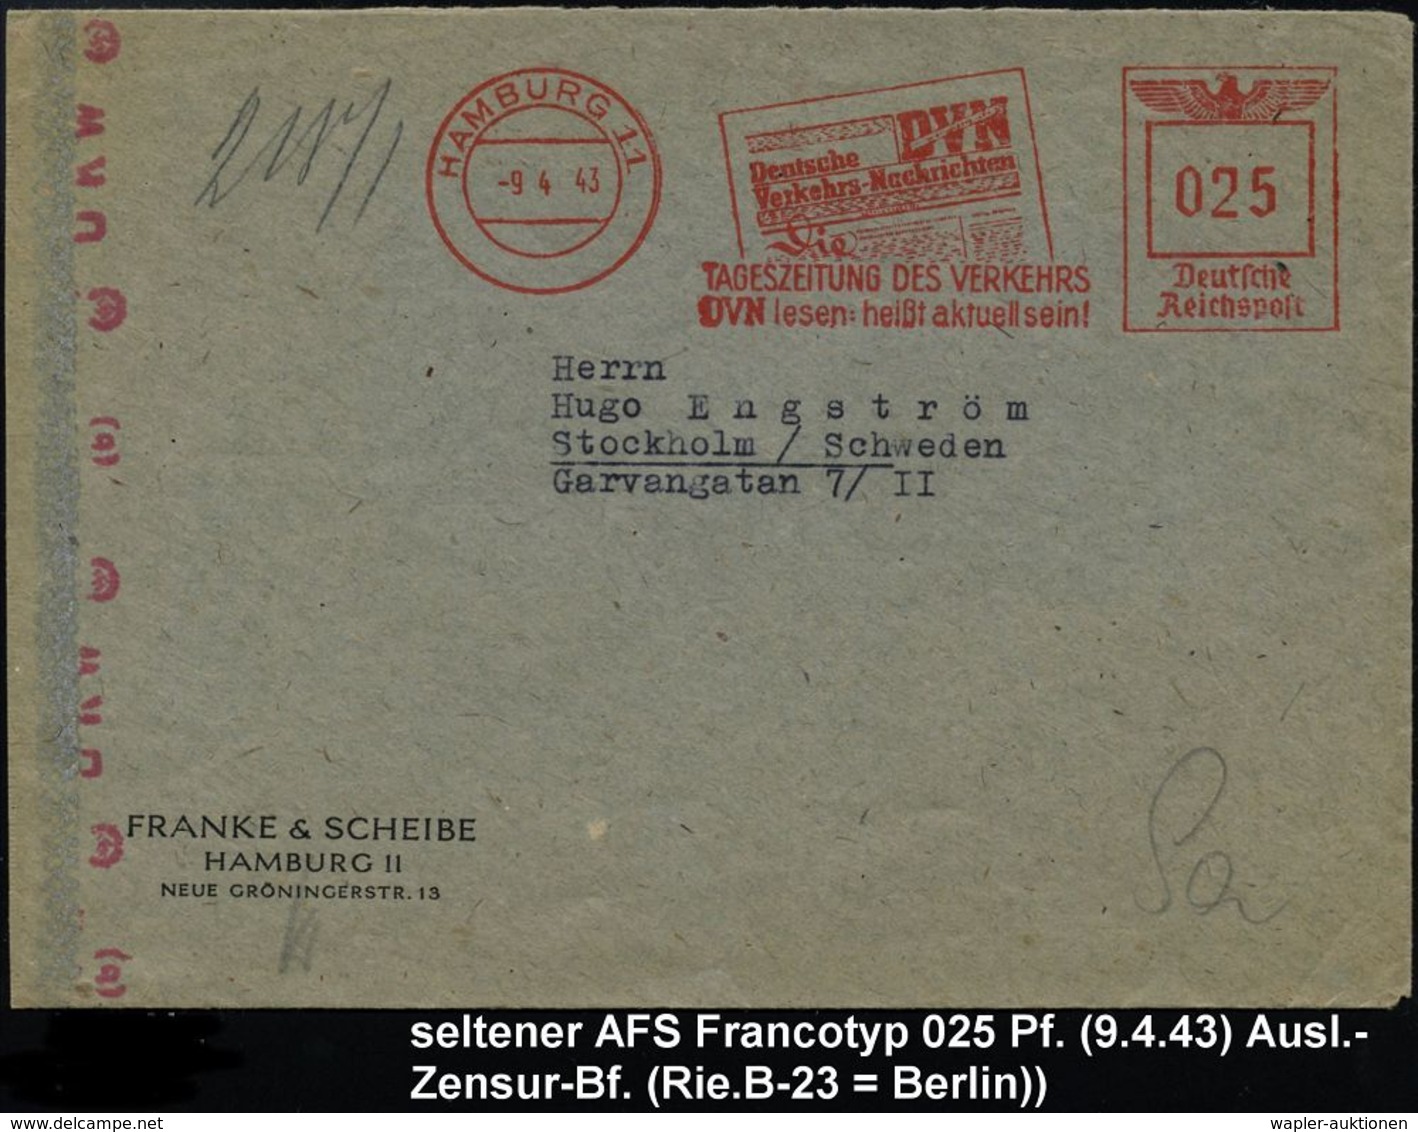 ALLGEM. VERKEHR- &  TRANSPORT-SYSTEME / TRANSPORT-GESCHICHTE : HAMBURG 11/ DVN/ Deutsche/ Verkehrs-Nachrichten.. 1943 (9 - Automobili